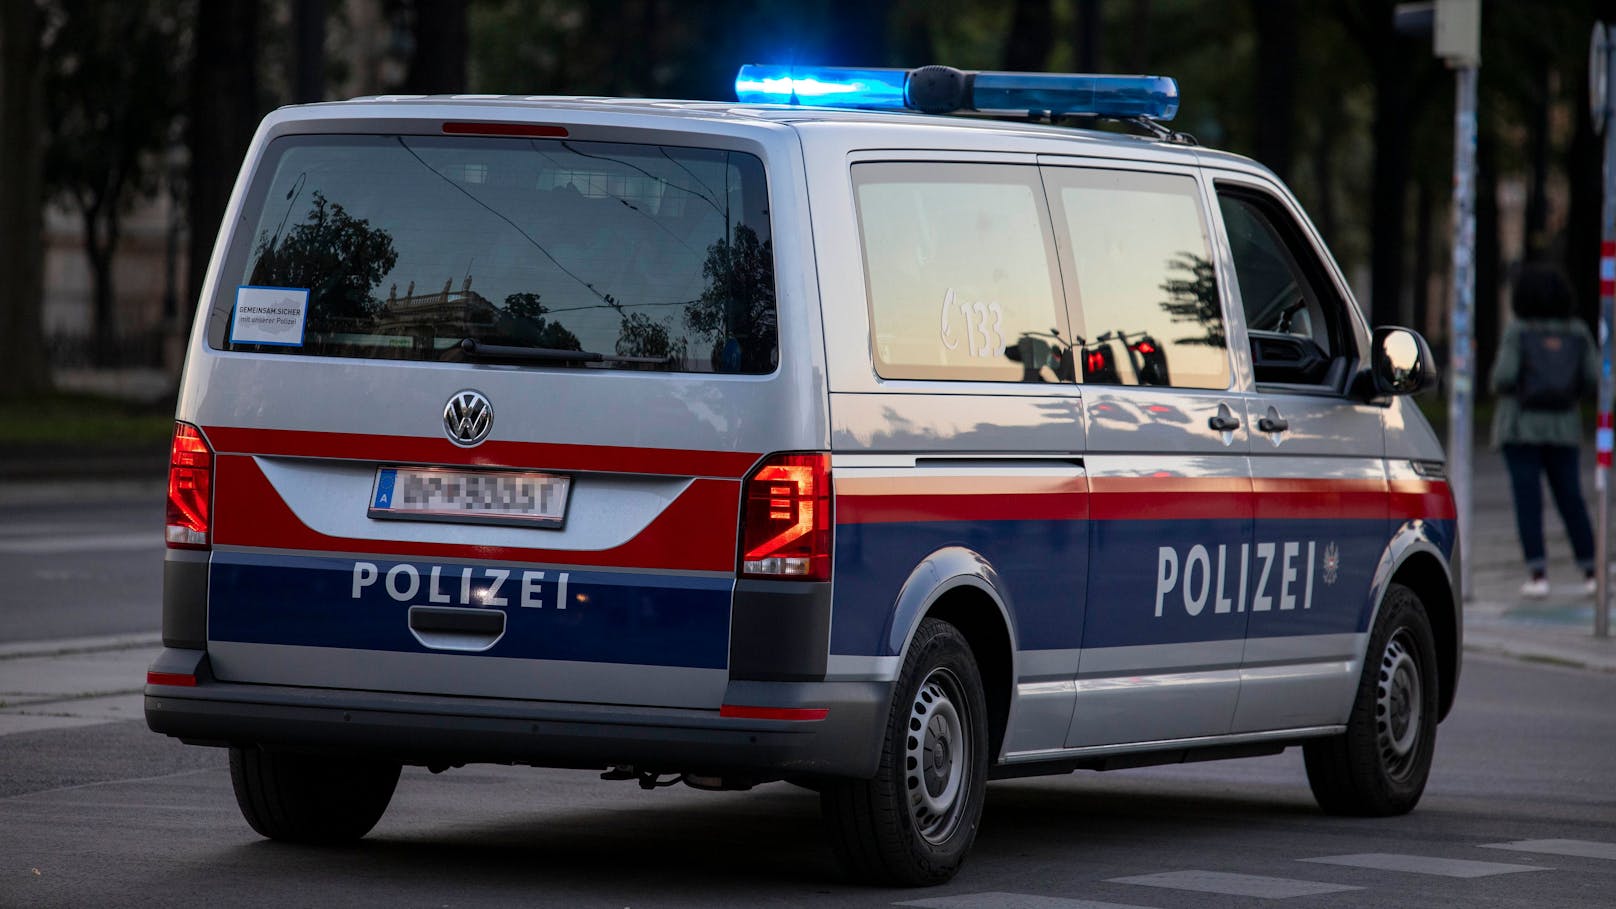 Am Dienstag erwischten Polizisten in Wien-Penzing einen Mann dabei, wie er Drogen an mehrere Personen verkaufte. (Symbolbild)